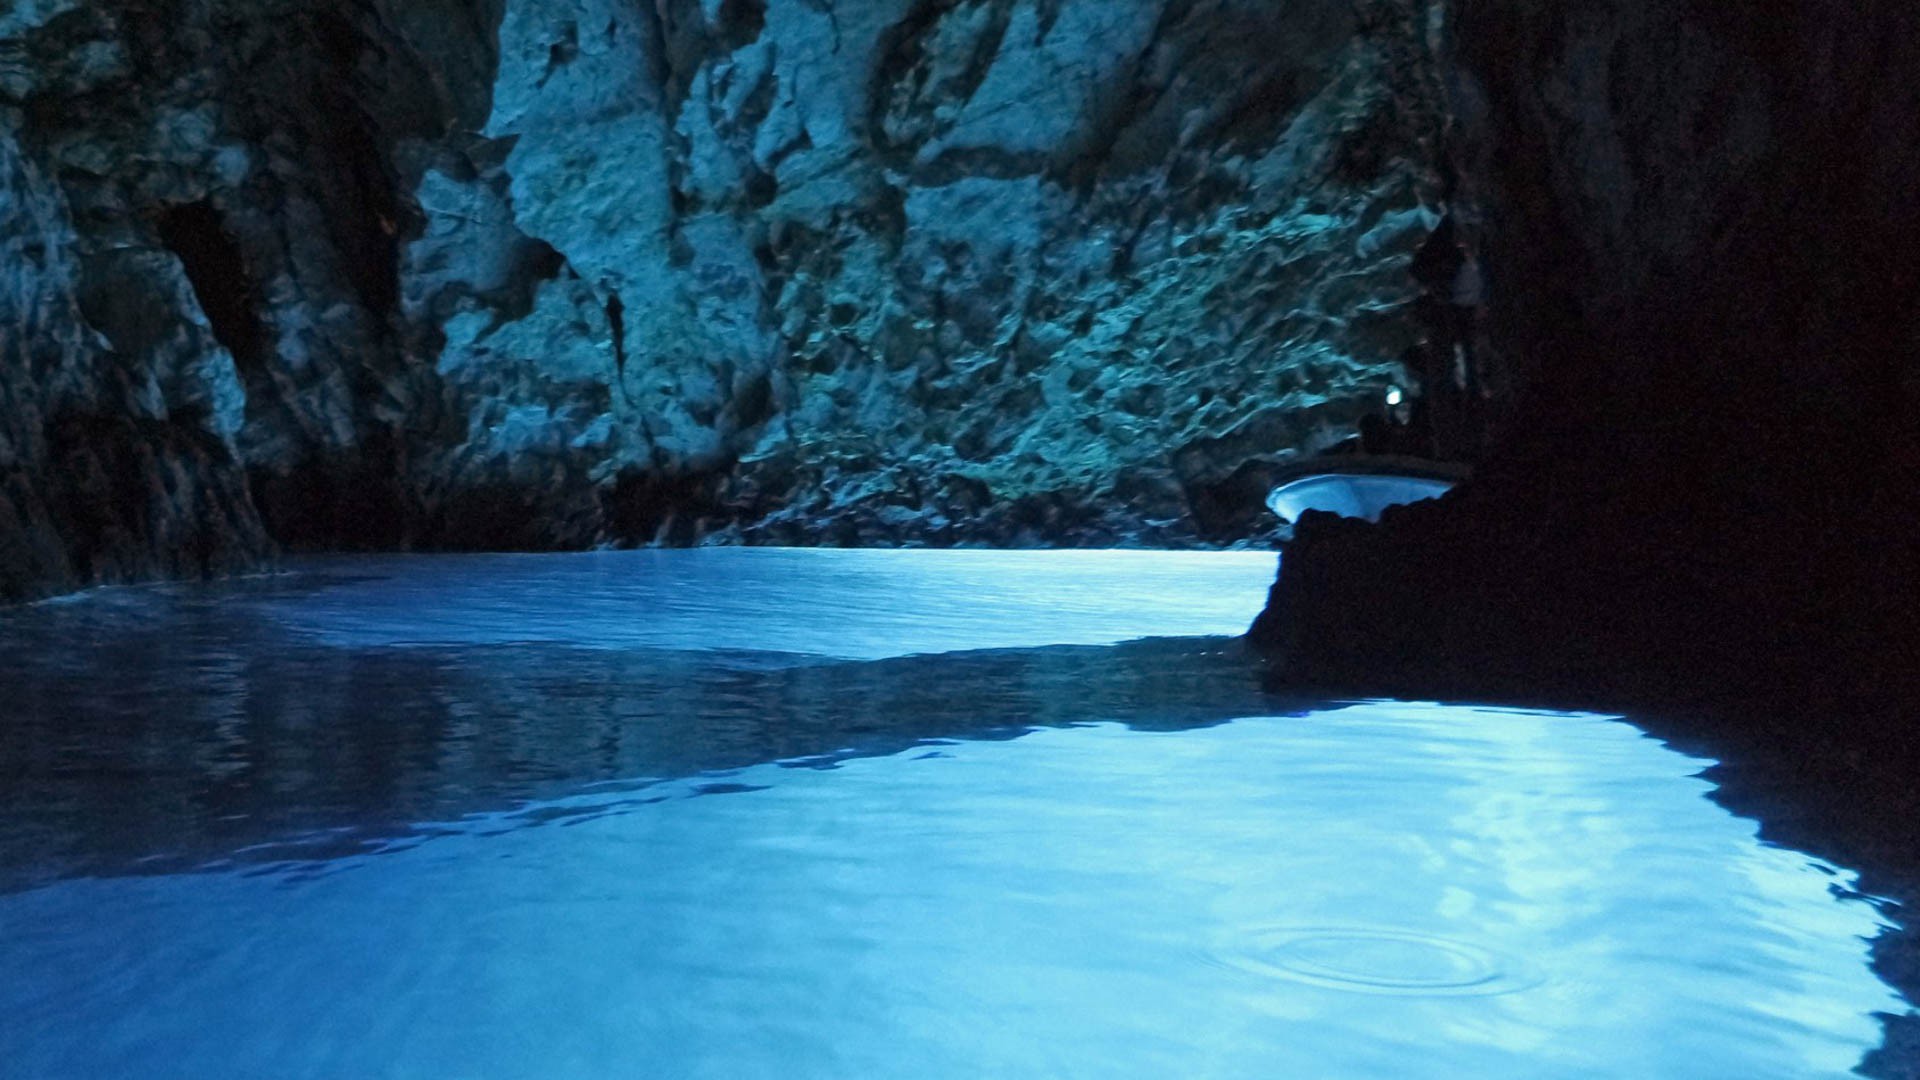 Biševo (Blue Cave) - Adriatic Sea | Croatia Cruise Croatia Cruise